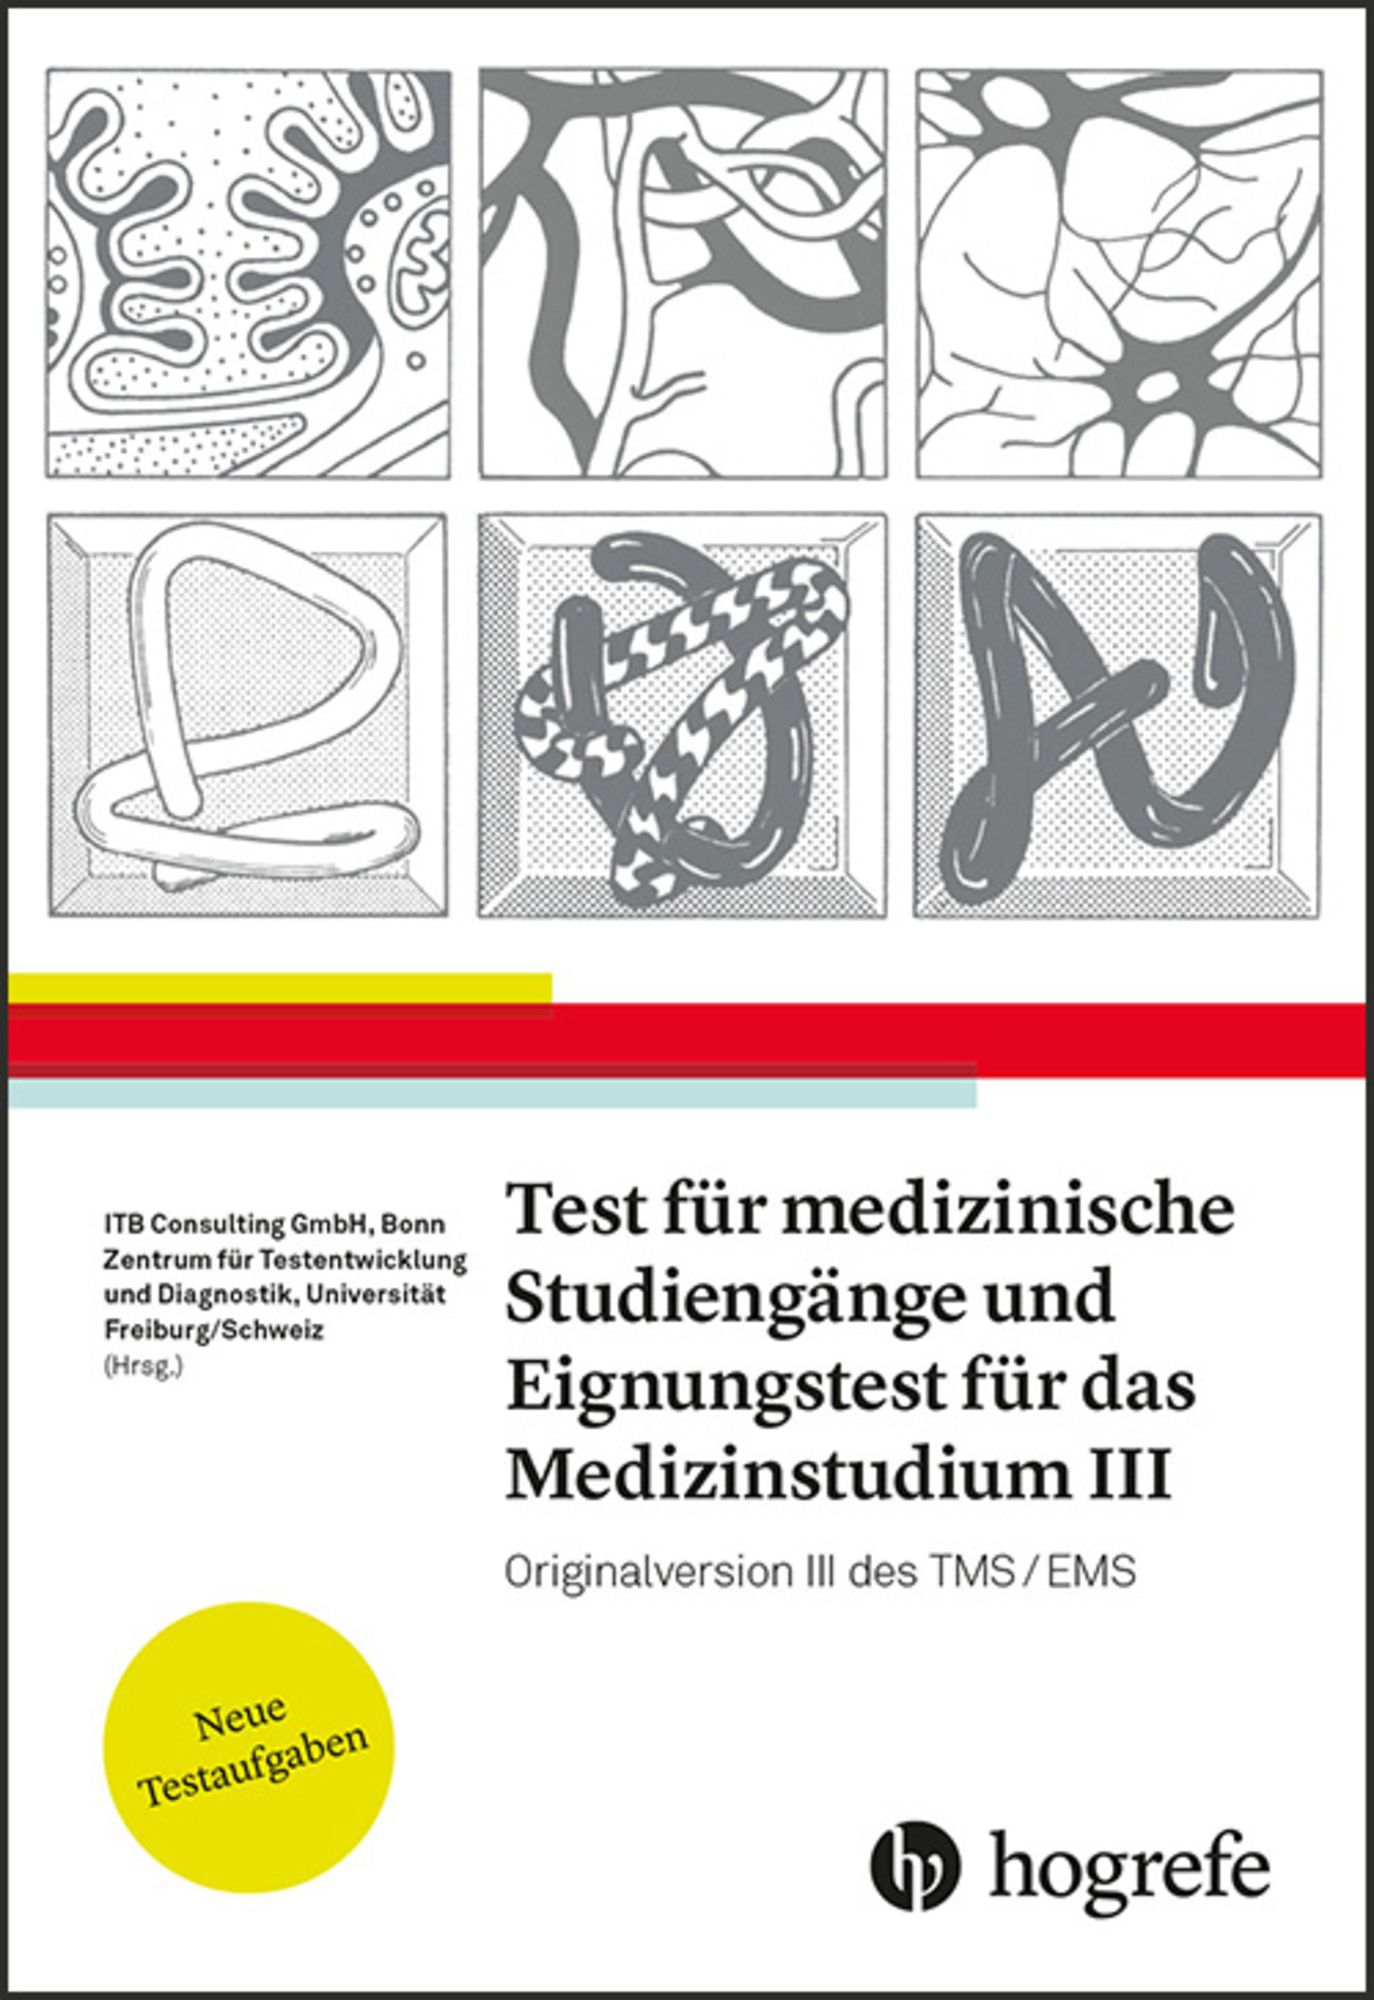 https://images.thalia.media/-/BF2000-2000/a626db6b8d1a4ff6813bb9108fe79255/test-fuer-medizinische-studiengaenge-und-eignungstest-fuer-das-medizinstudium-iii-taschenbuch.jpeg